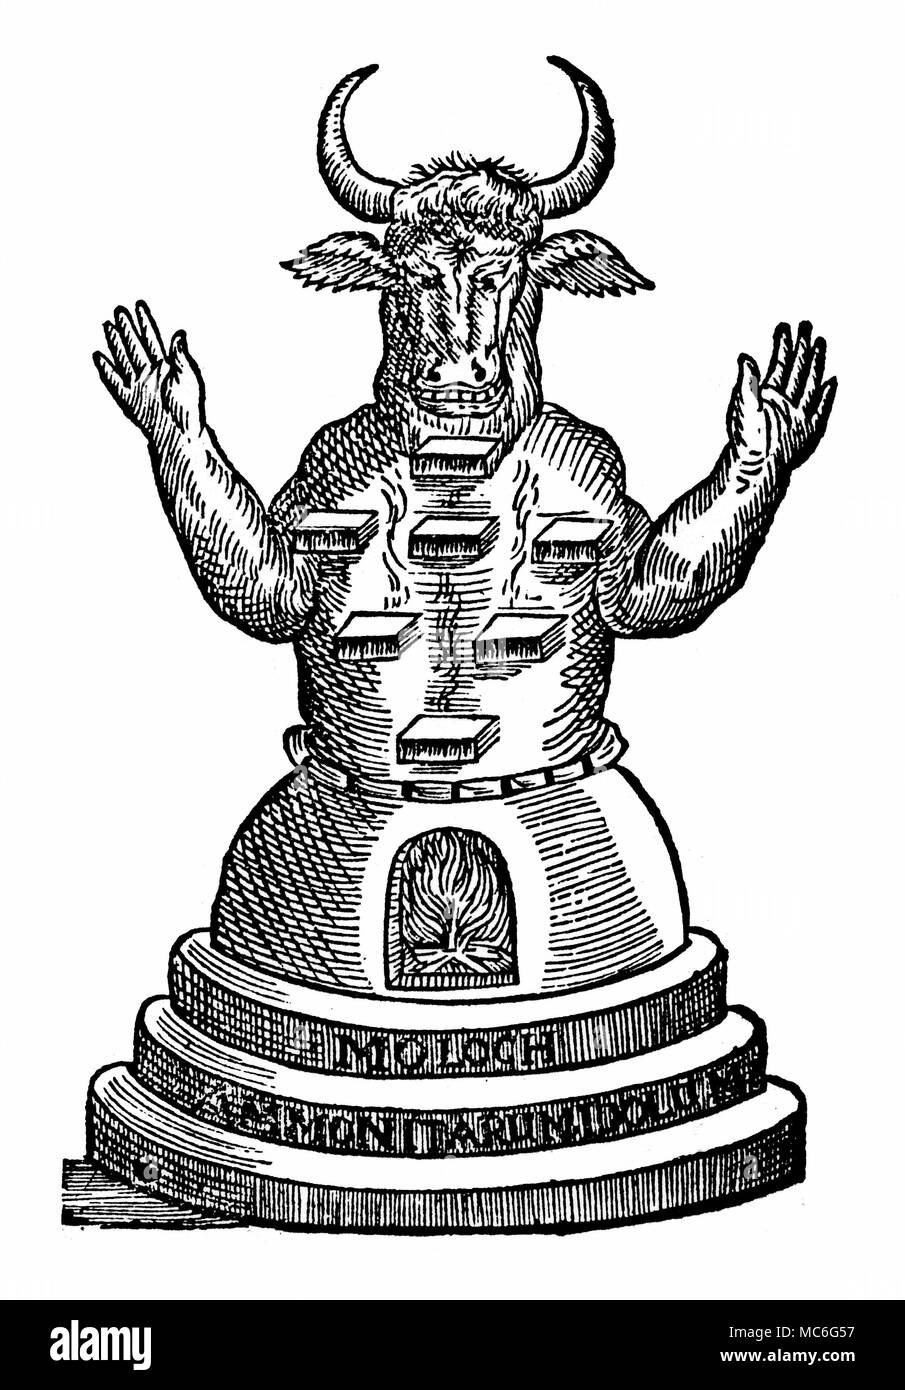 Demoni - MOLOCH Moloch, il dio dei figli di Ammon, al quale le persone sono stati sacrificati, da essere gettato nel fuoco nel suo stomaco (vedere II Re, 23:10). Da M. Gregorii Michaelis, Notae in Jacobi Gaffarelli Curiositates, 1676. Foto Stock